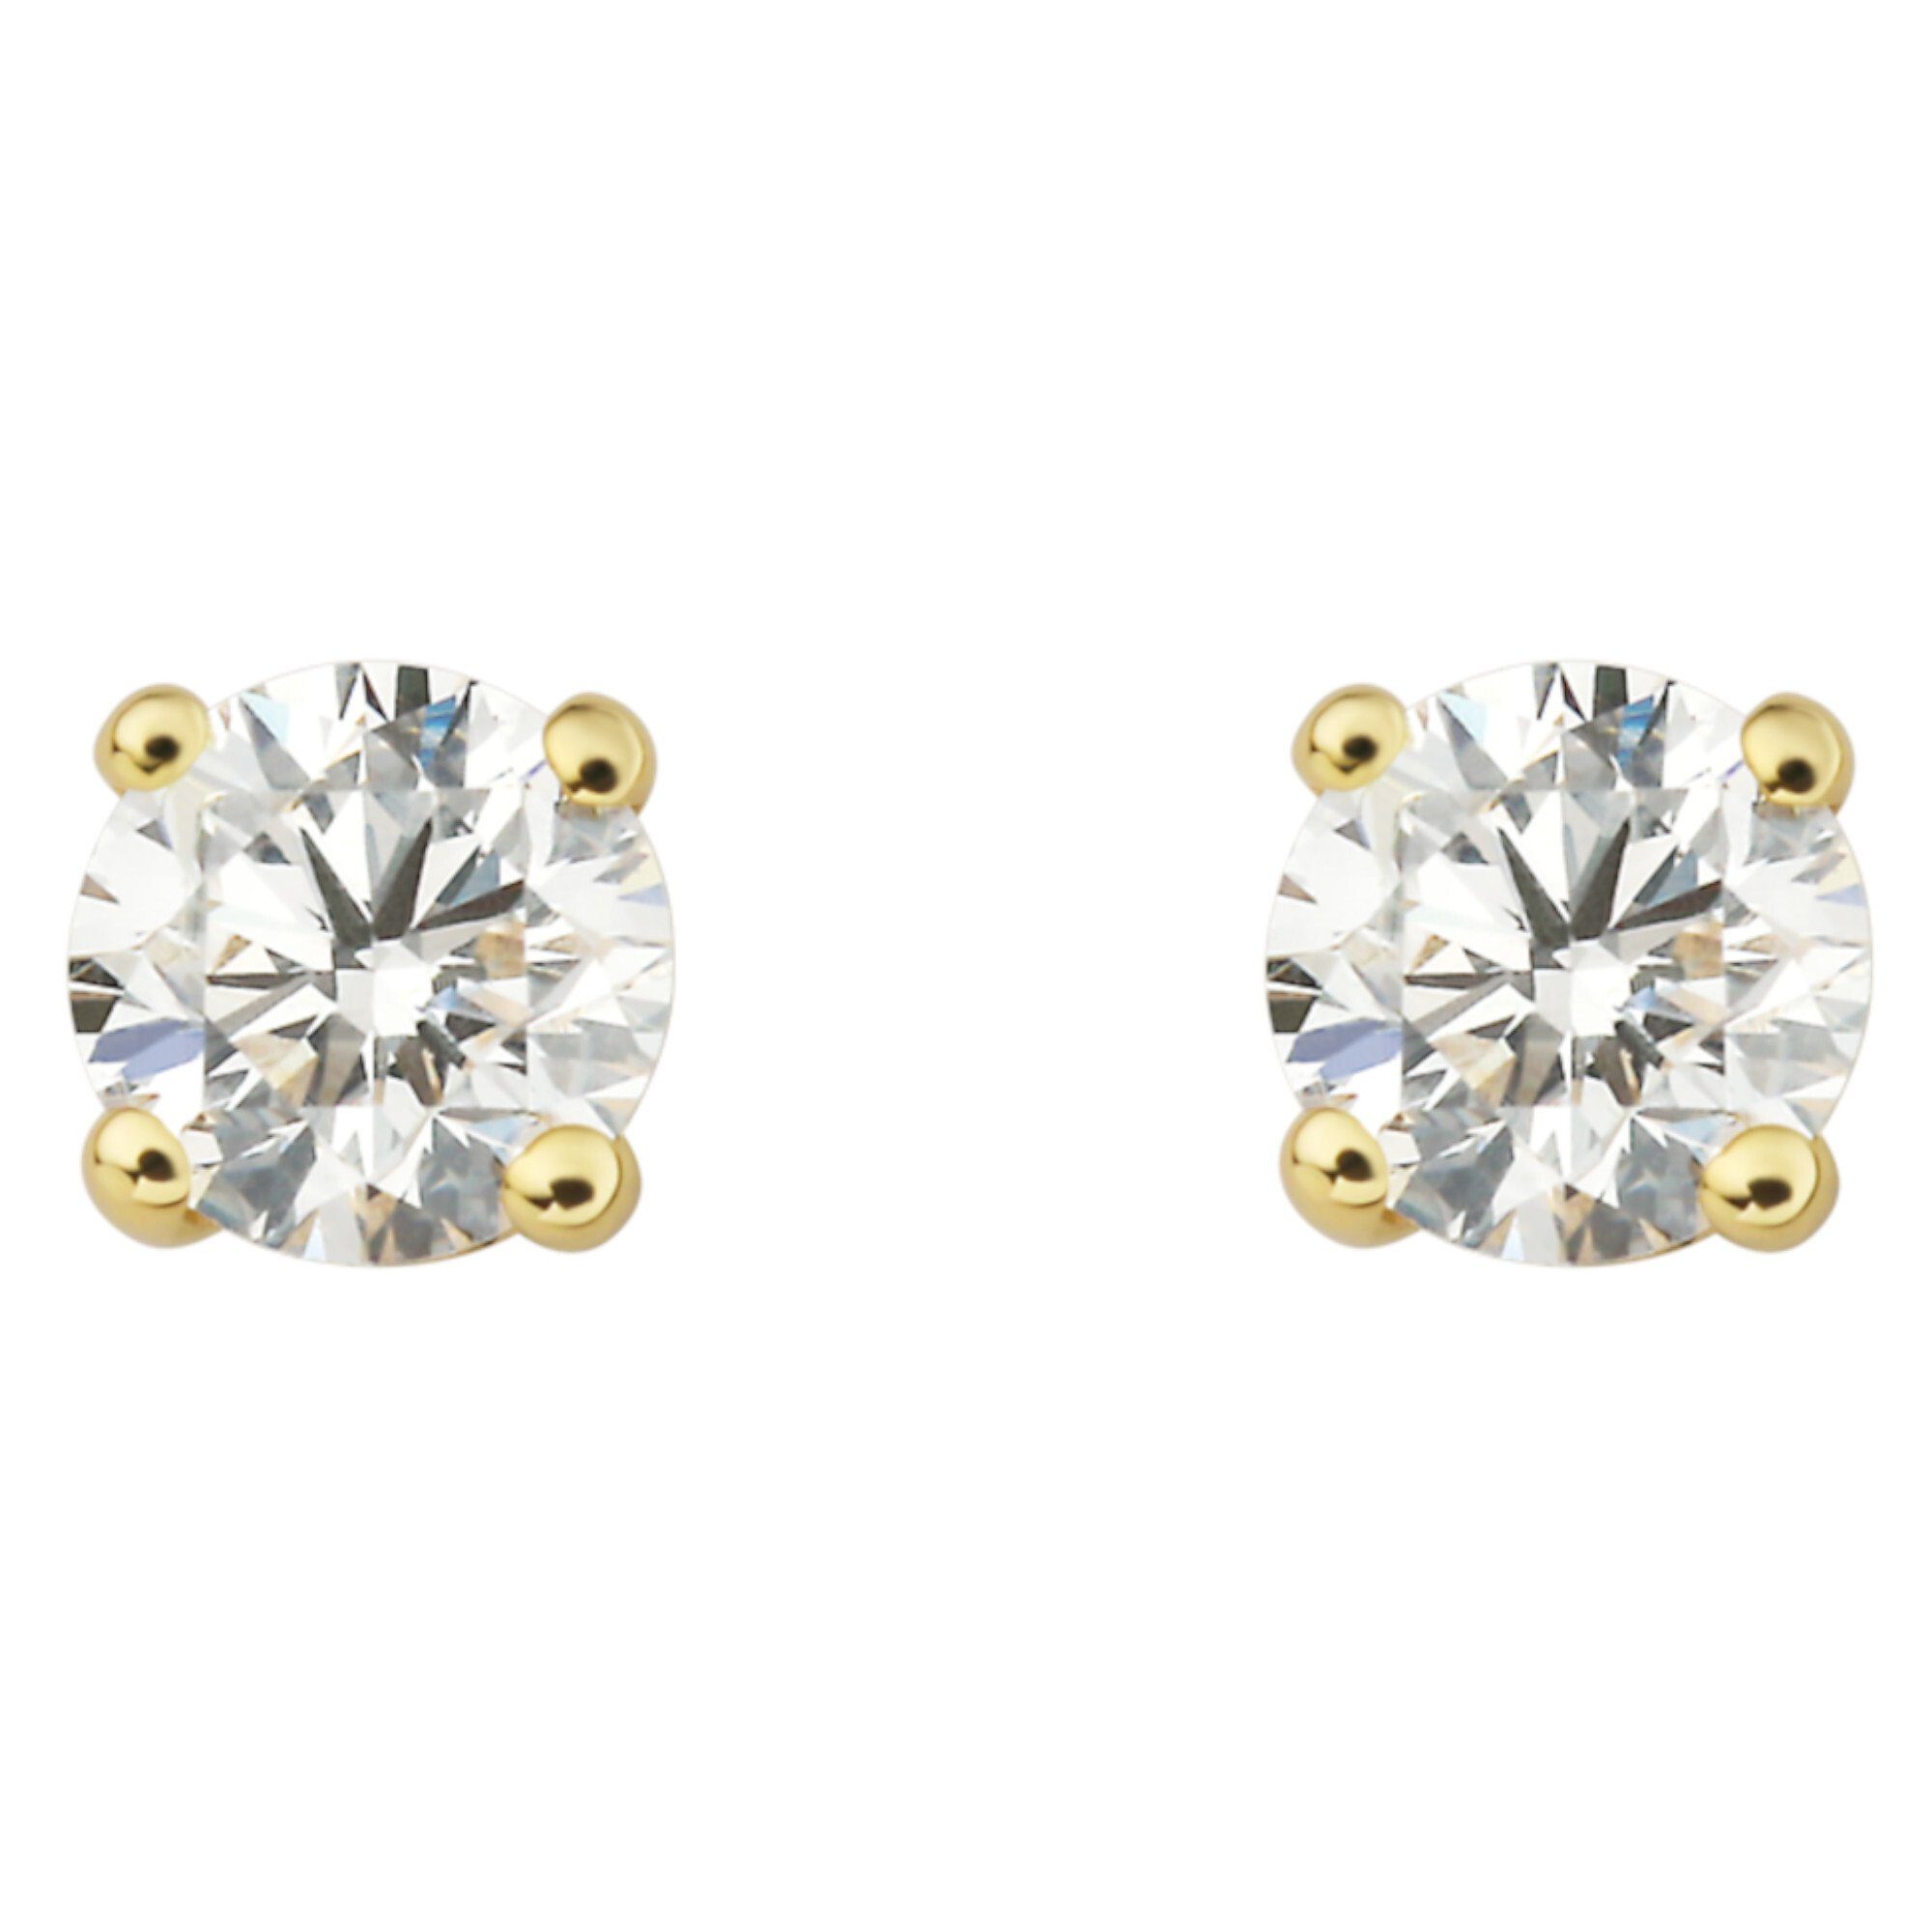 ONE ELEMENT Paar Ohrstecker 0.40 ct Diamant Brillant Ohrringe Ohrstecker aus 585 Gelbgold, Damen Gold Schmuck